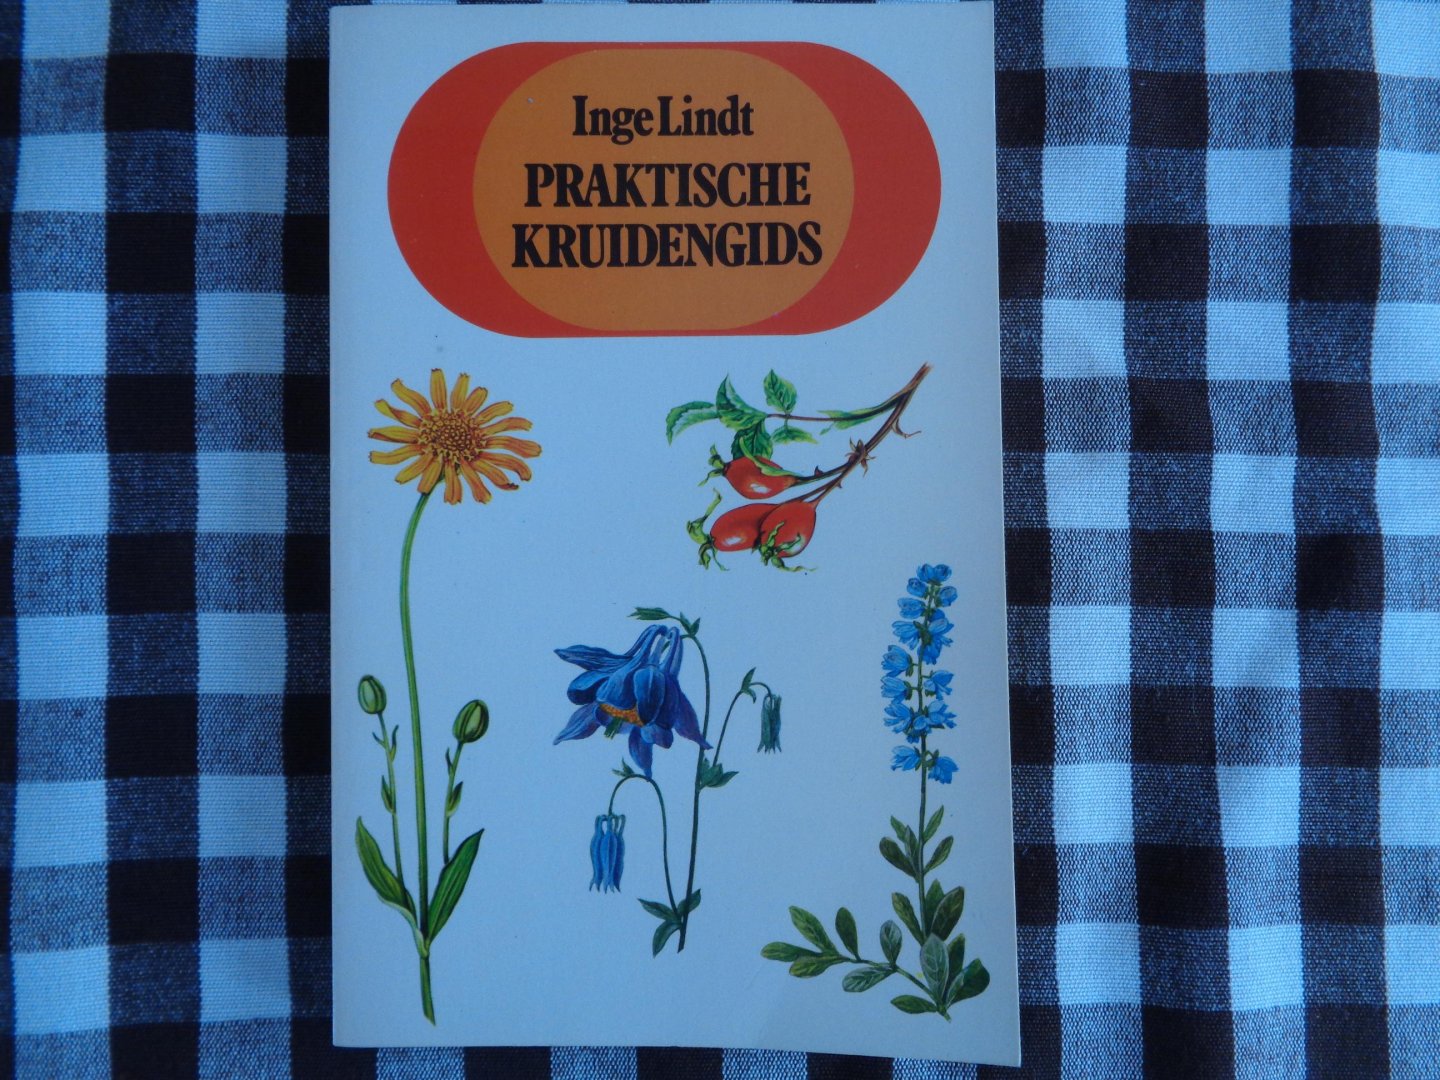 inge lindt - Praktische kruidengids / druk 1